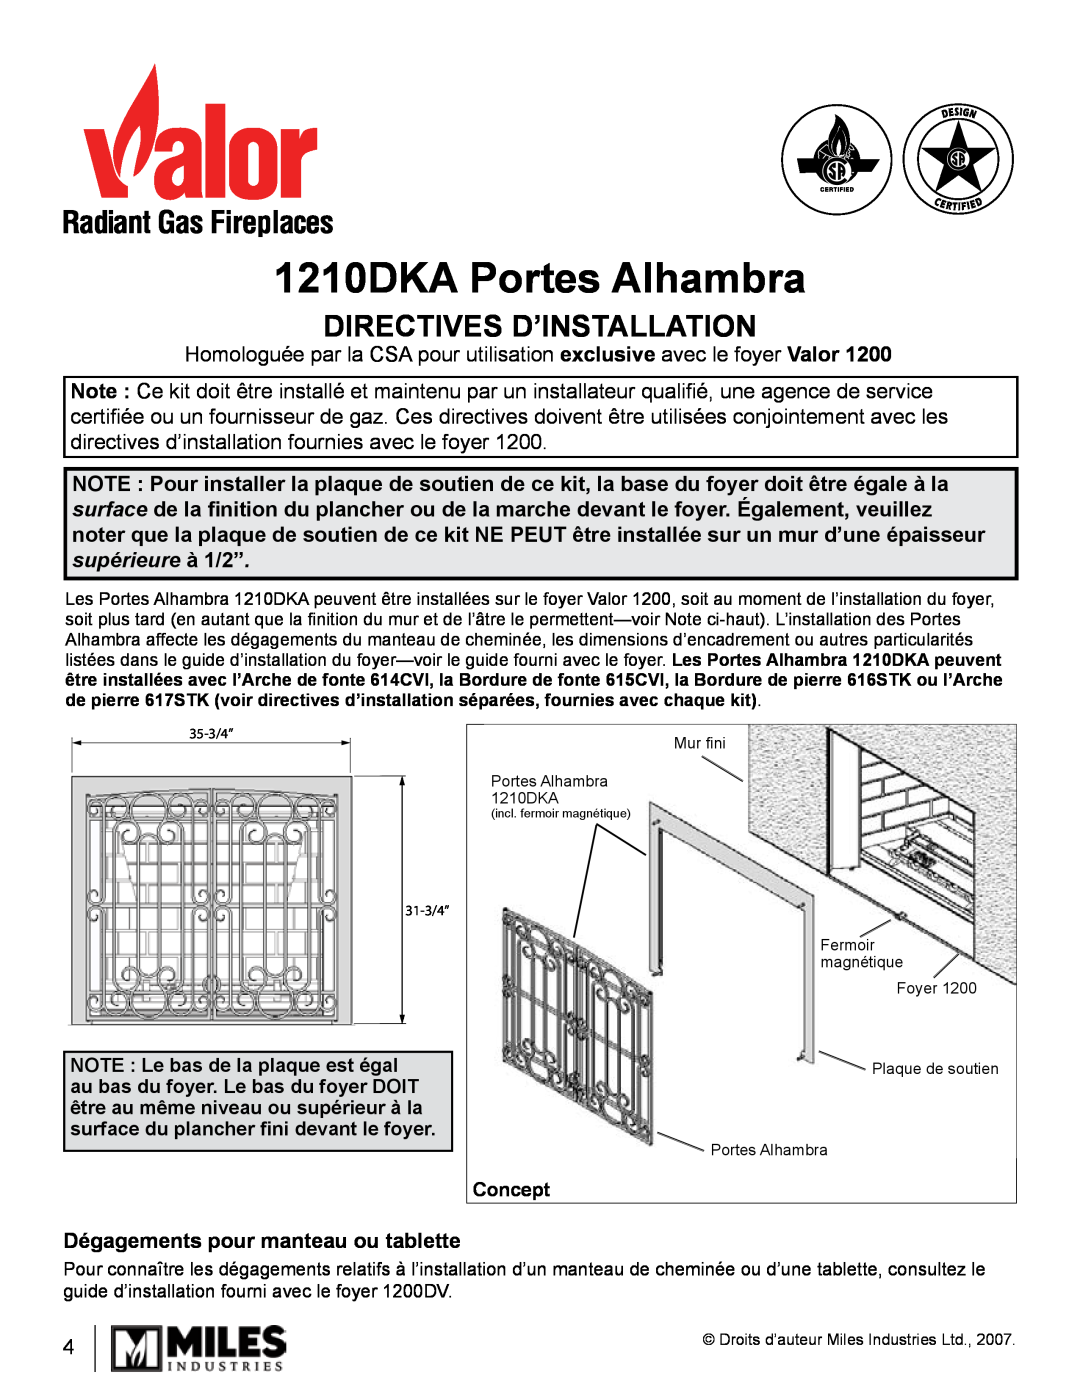 Valor Auto Companion Inc 1210DKA Portes Alhambra, Directives D’Installation, Dégagements pour manteau ou tablette 